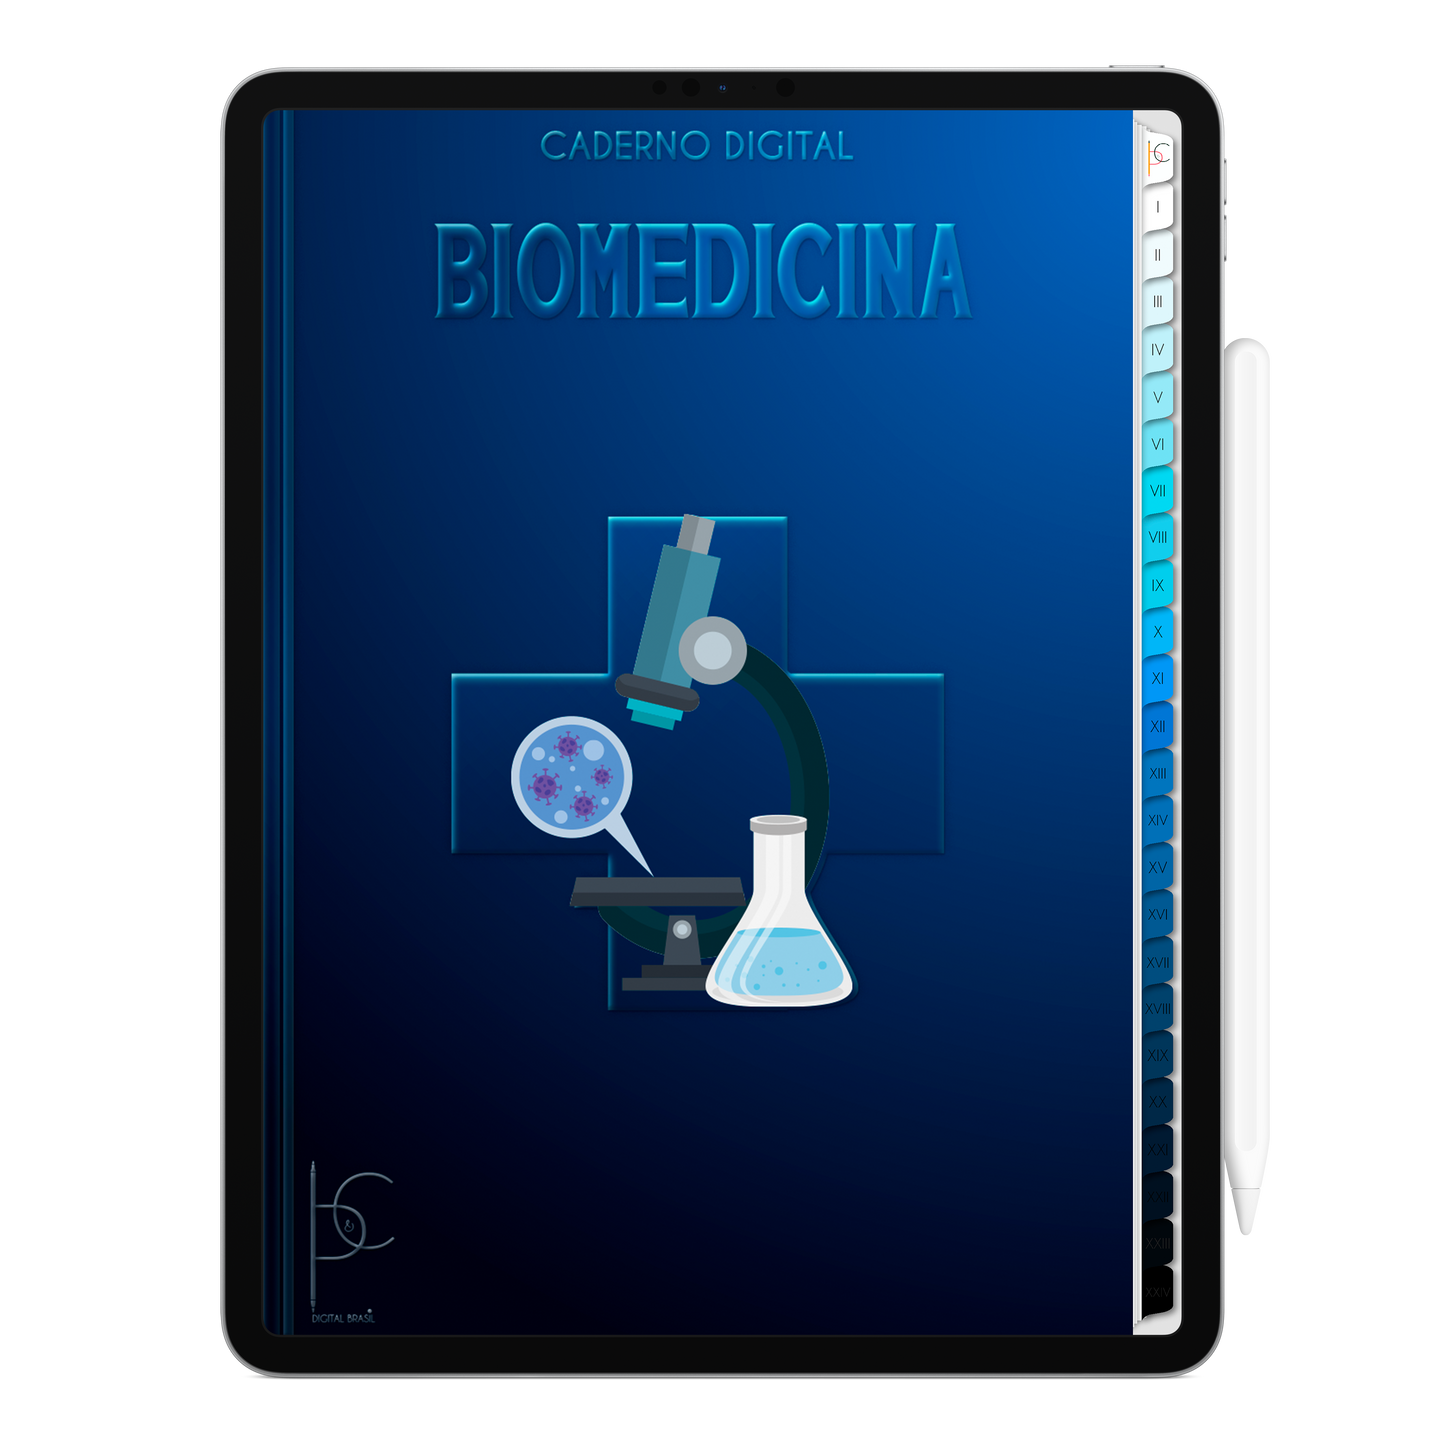 Caderno Digital Blue Biomedicina Base Científica 24 Matérias • Para iPad e Tablet Android • Download instantâneo • Sustentável